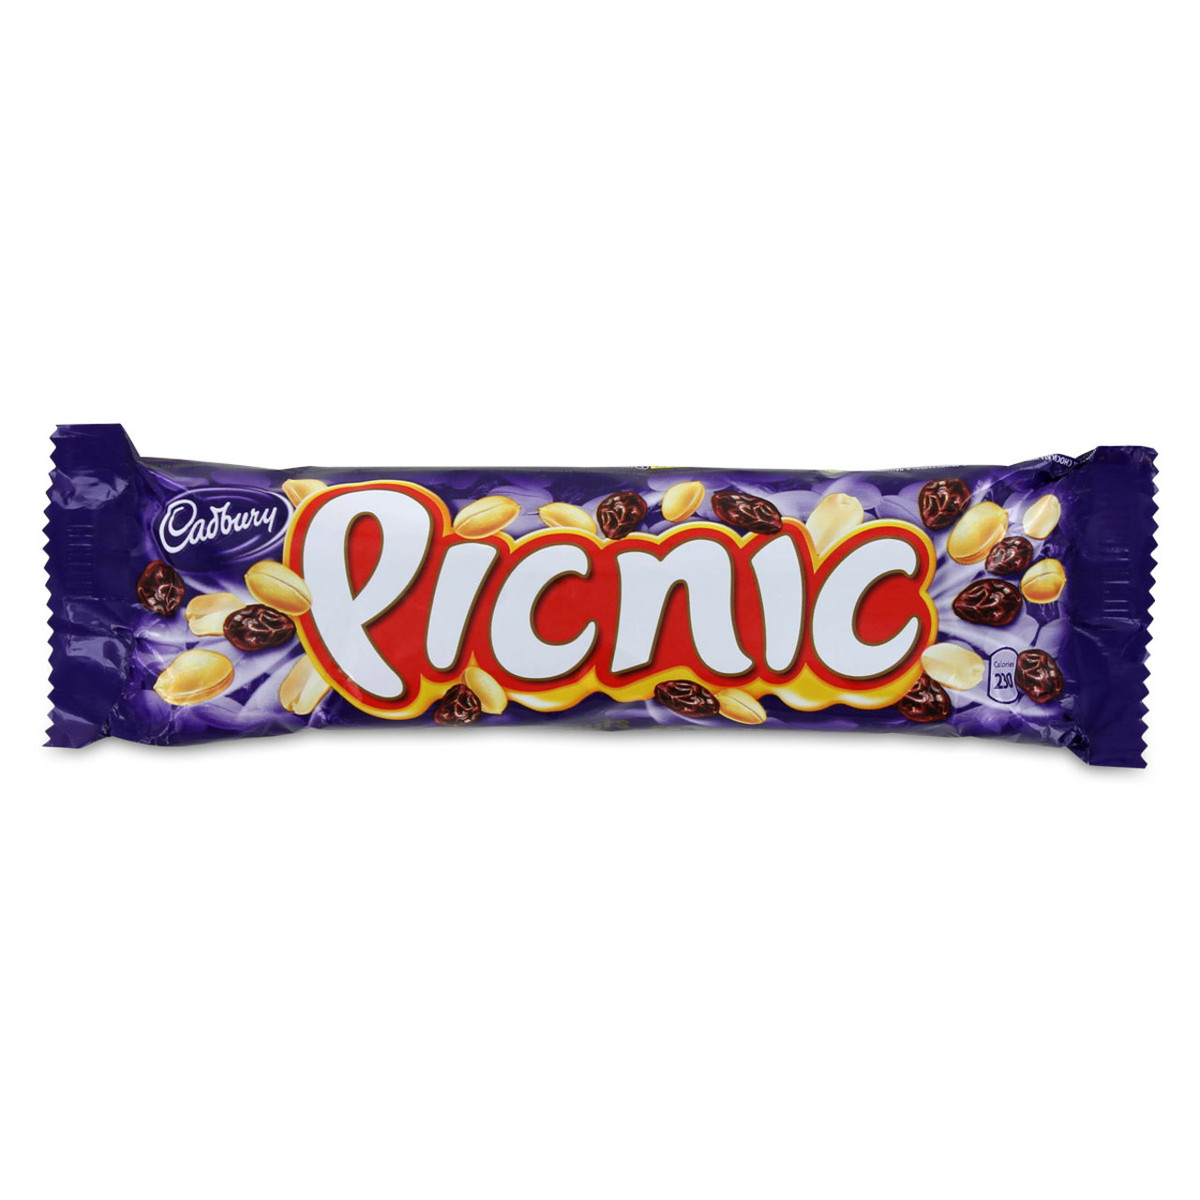 Cadbury's Picnic - 1.69 oz (48g)